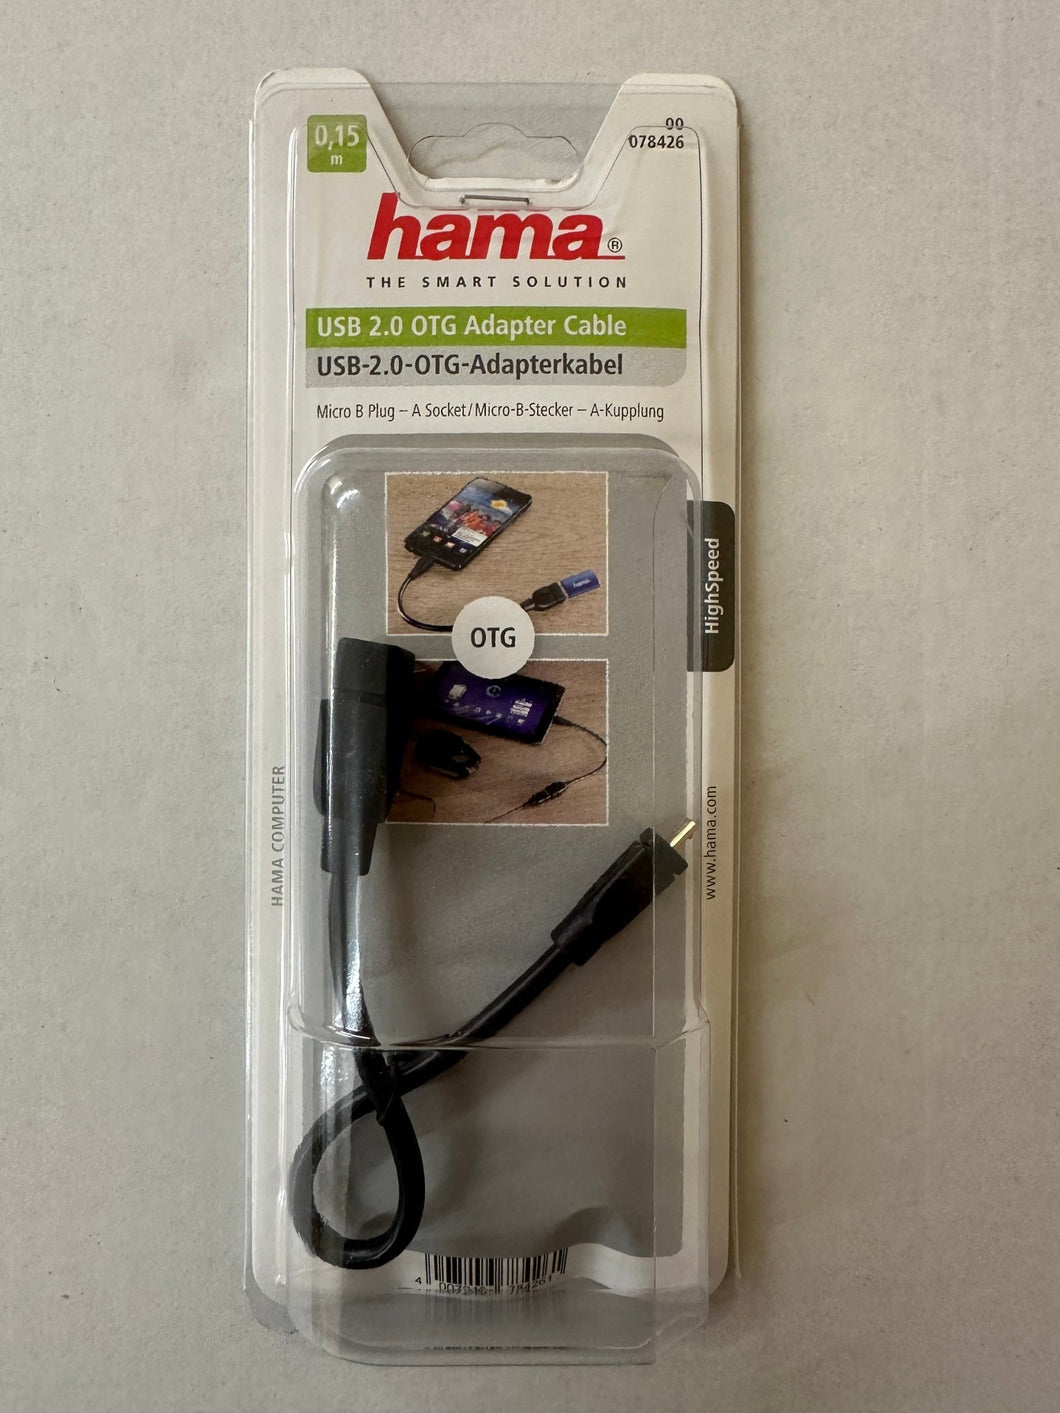 Hama USB 2.0 Adapter Cable - USB - Kabel - USB (W) zu Micro - USB Typ B (M) - 15 cm - Schwarz - für Samsung Galaxy S II (00 078426) - Die Mega Kiste